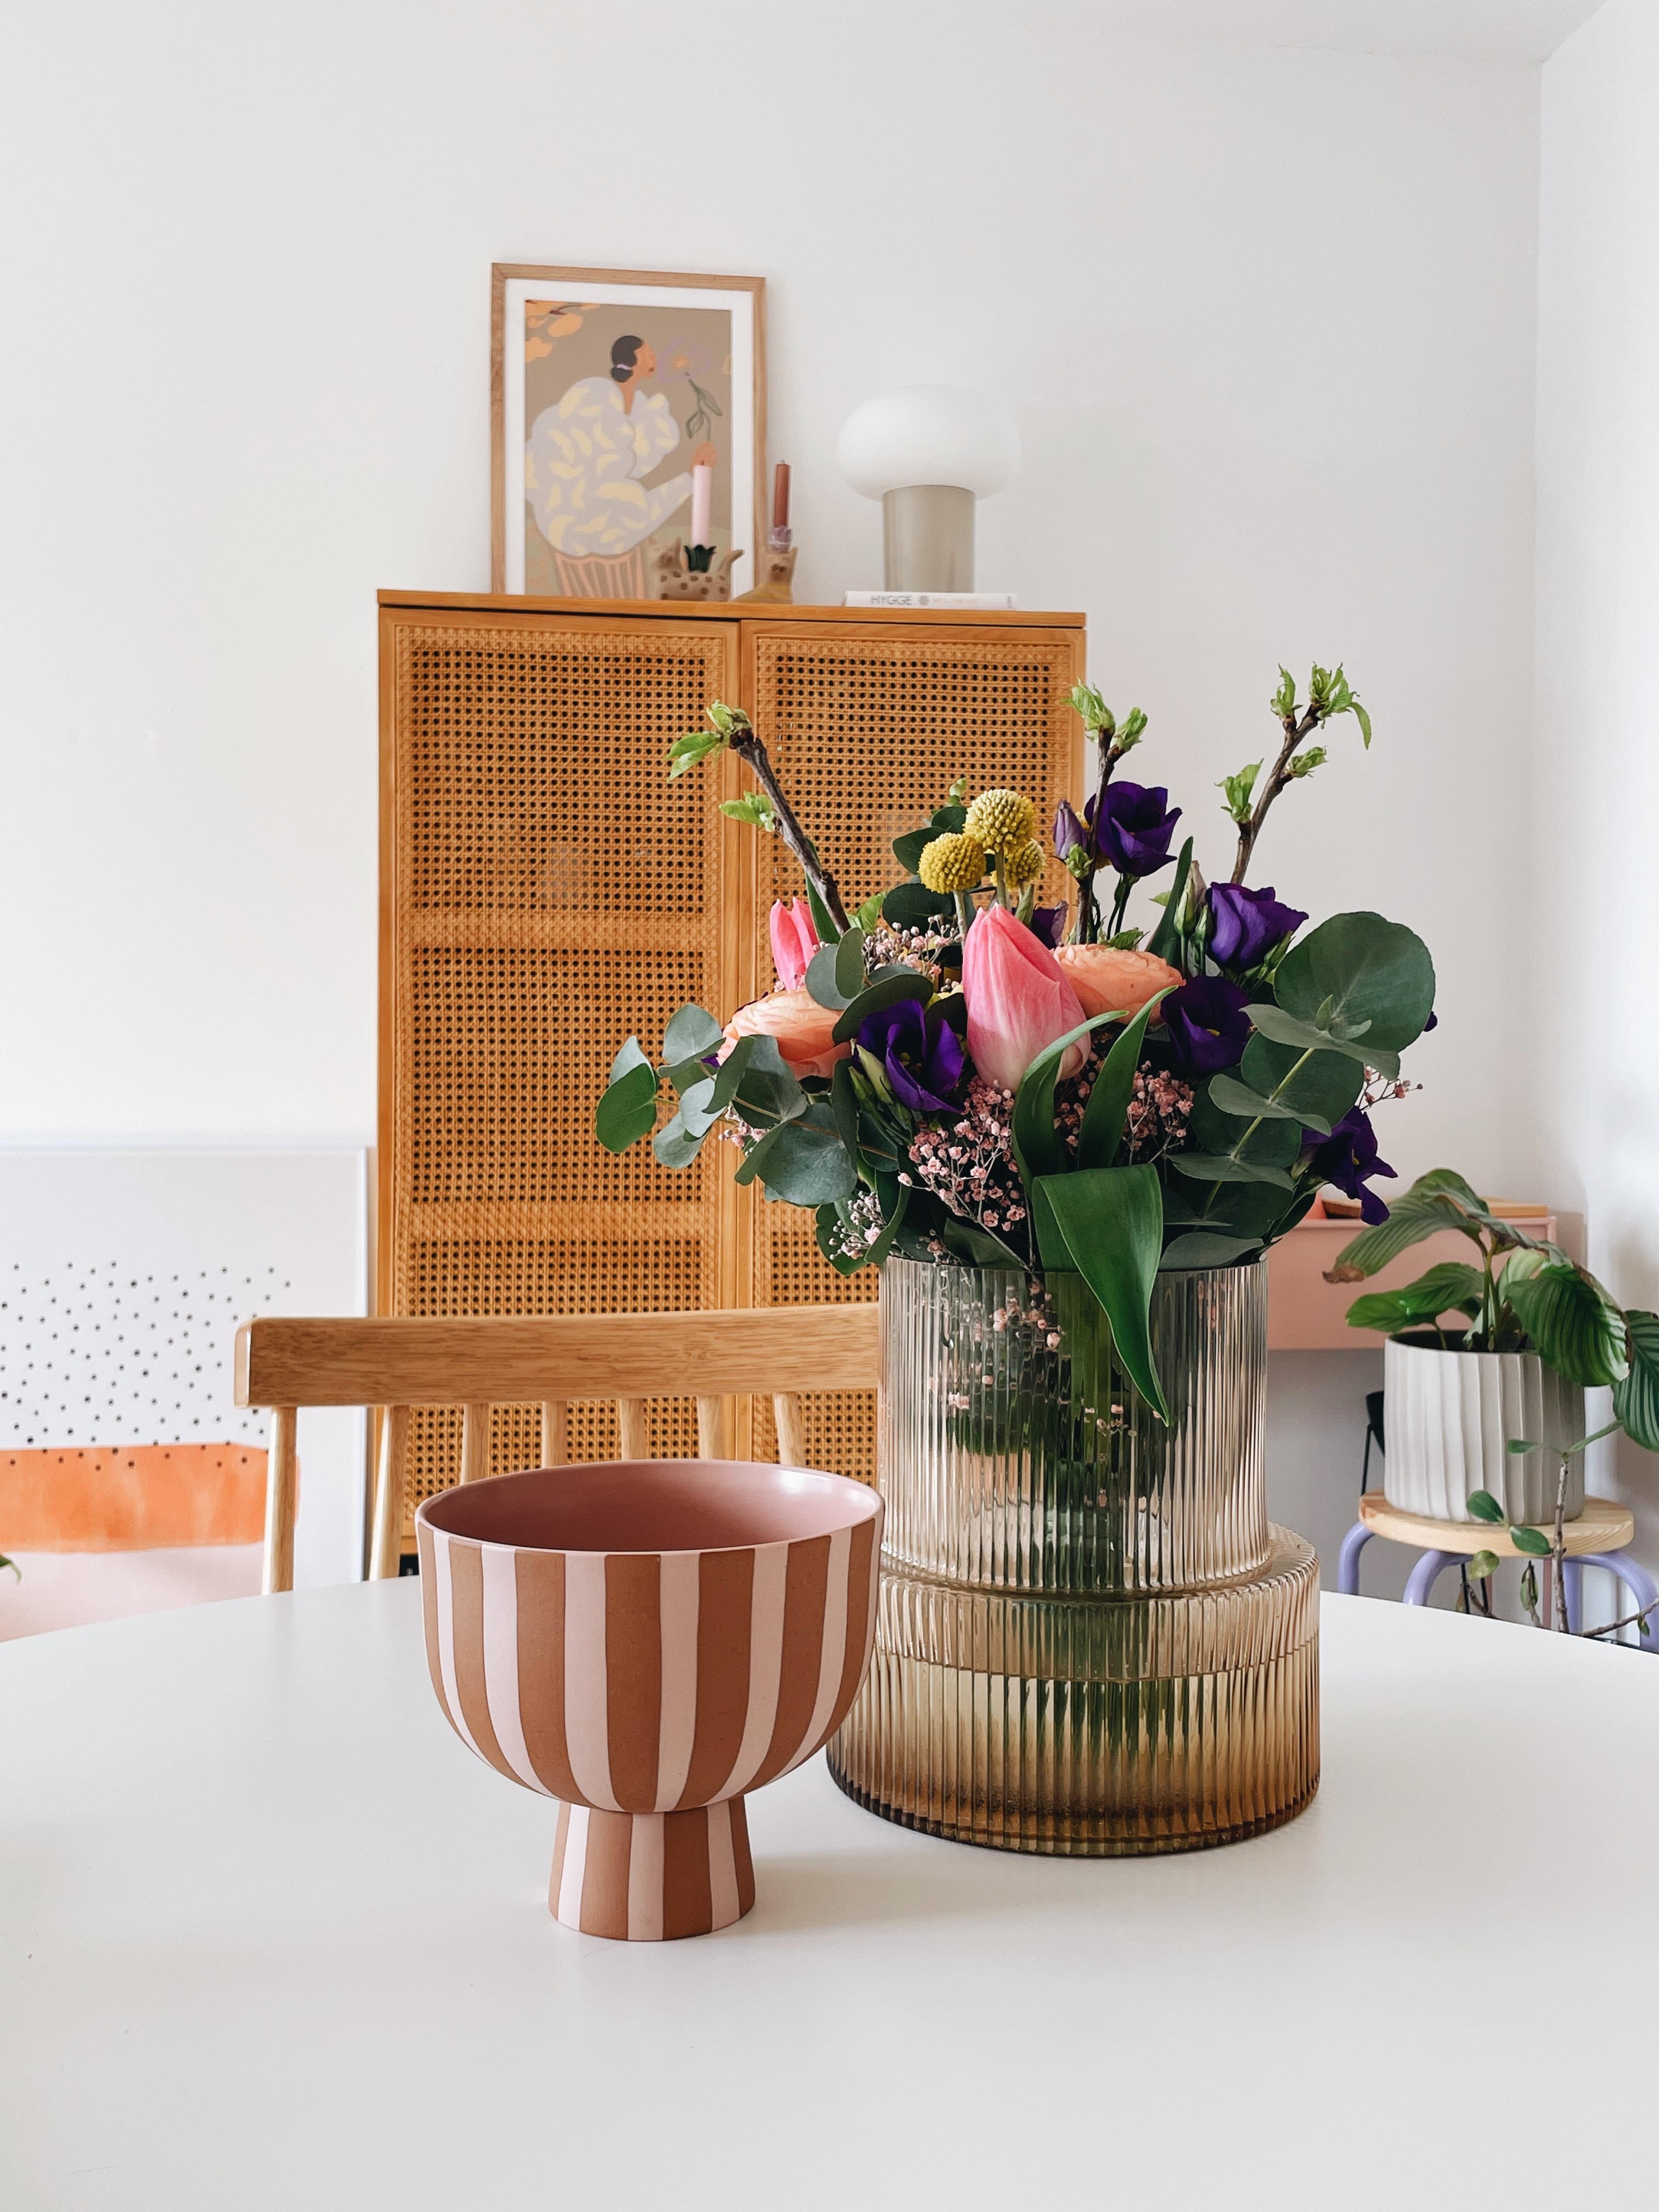 Blümchen 💐
#flowers #freshflowers #wohnzimmer #lieblingsraum #couchliebt #essecke #details #interior